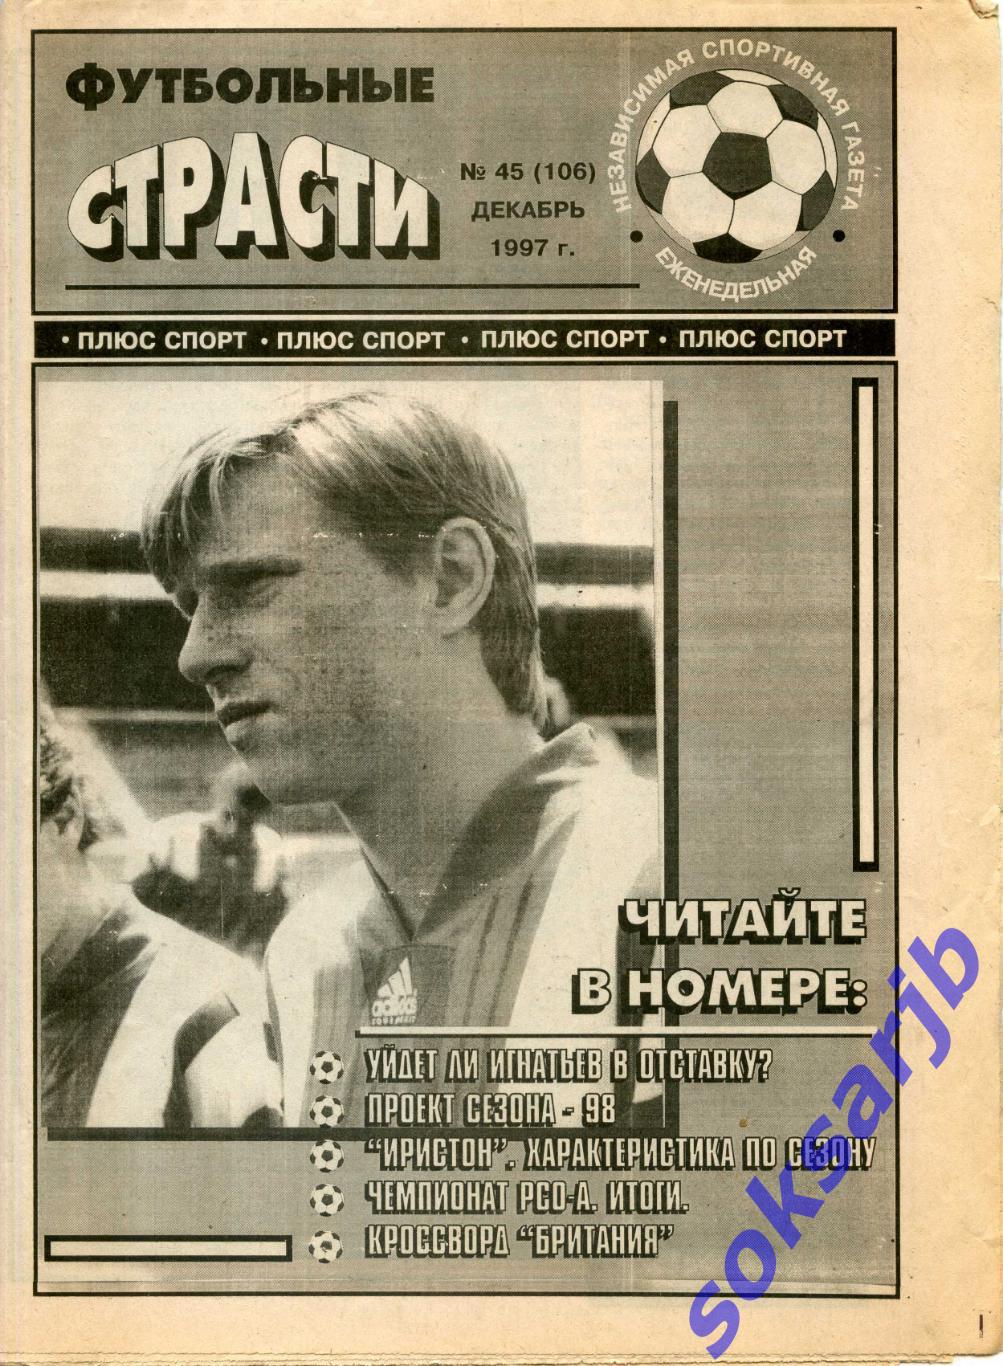 1997. декабрь Газета Футбольные страсти. №45 (106).